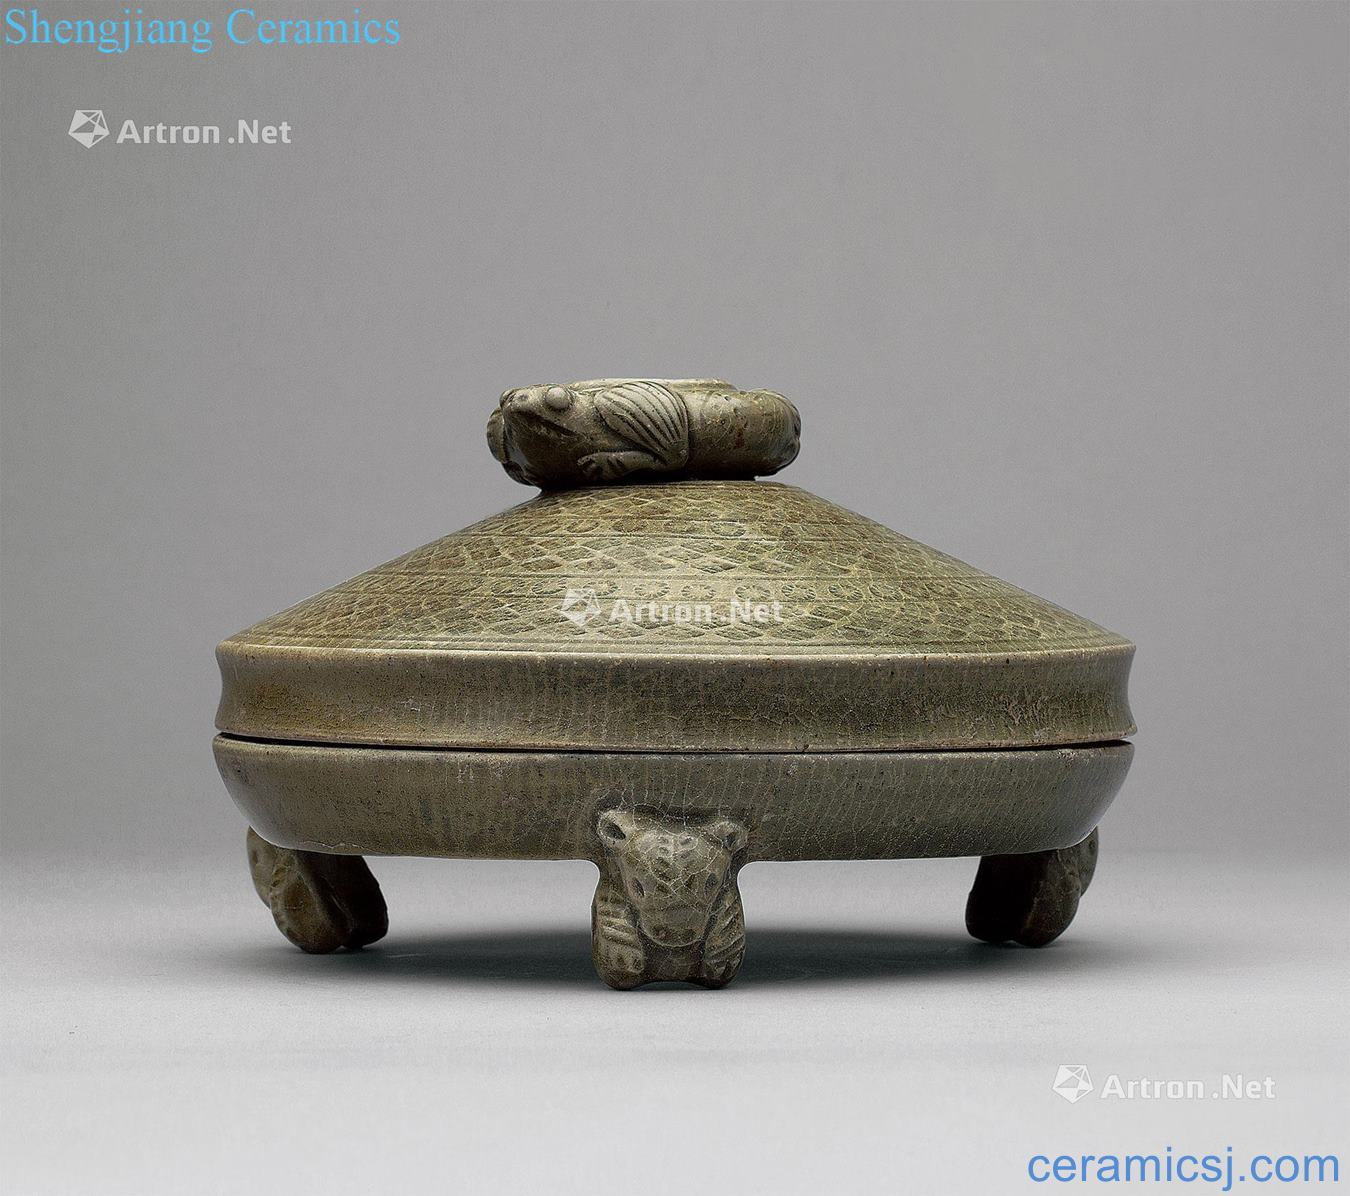 Western jin dynasty, the kiln three-legged censer